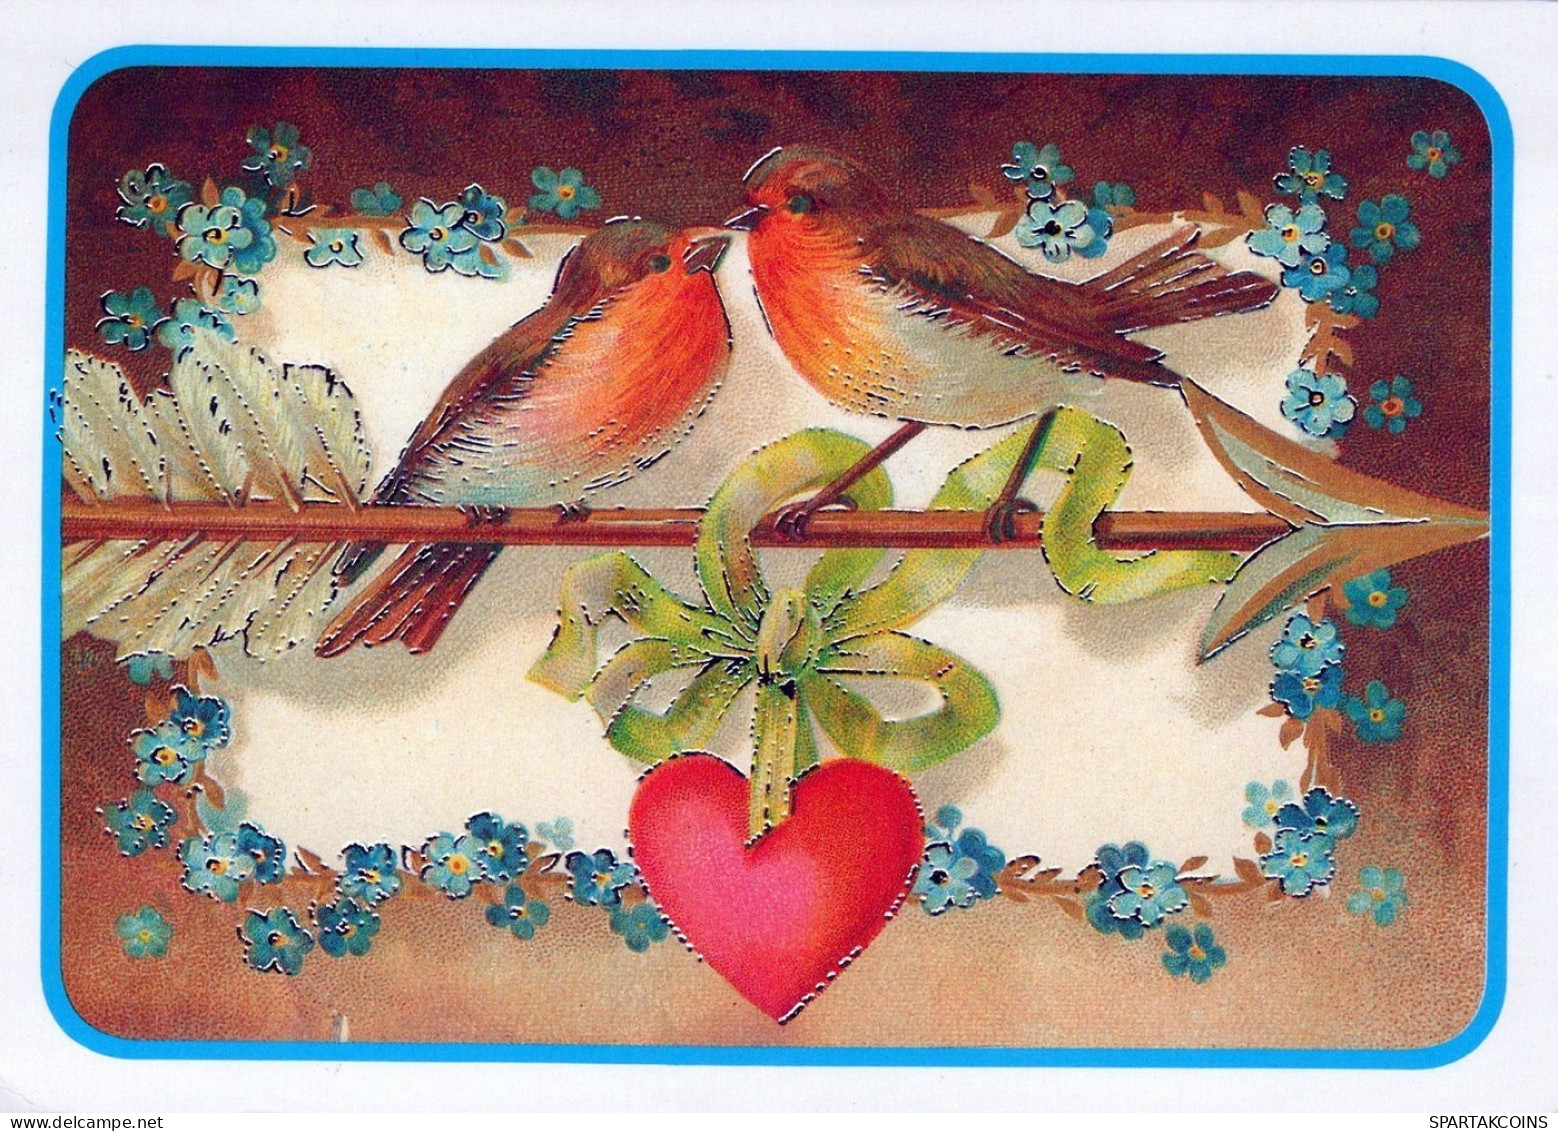 VOGEL Tier Vintage Ansichtskarte Postkarte CPSM #PAN175.DE - Birds